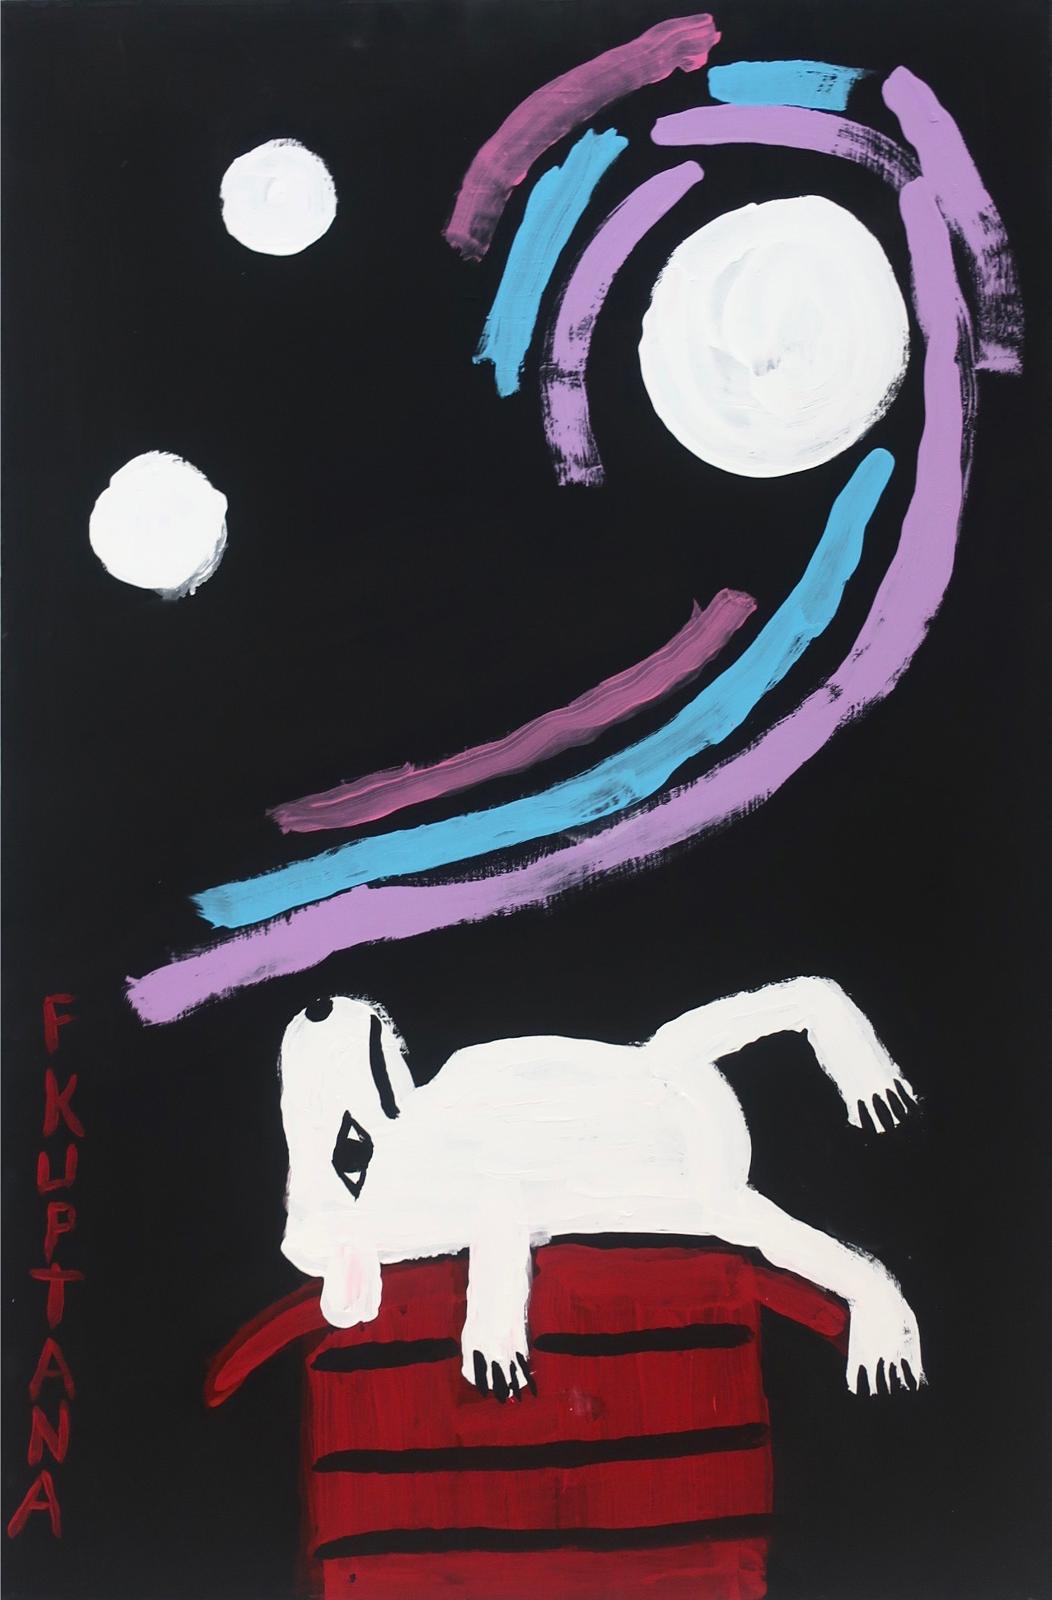 Floyd Kuptana (1964-2021) - Untitled (Moon Spins)